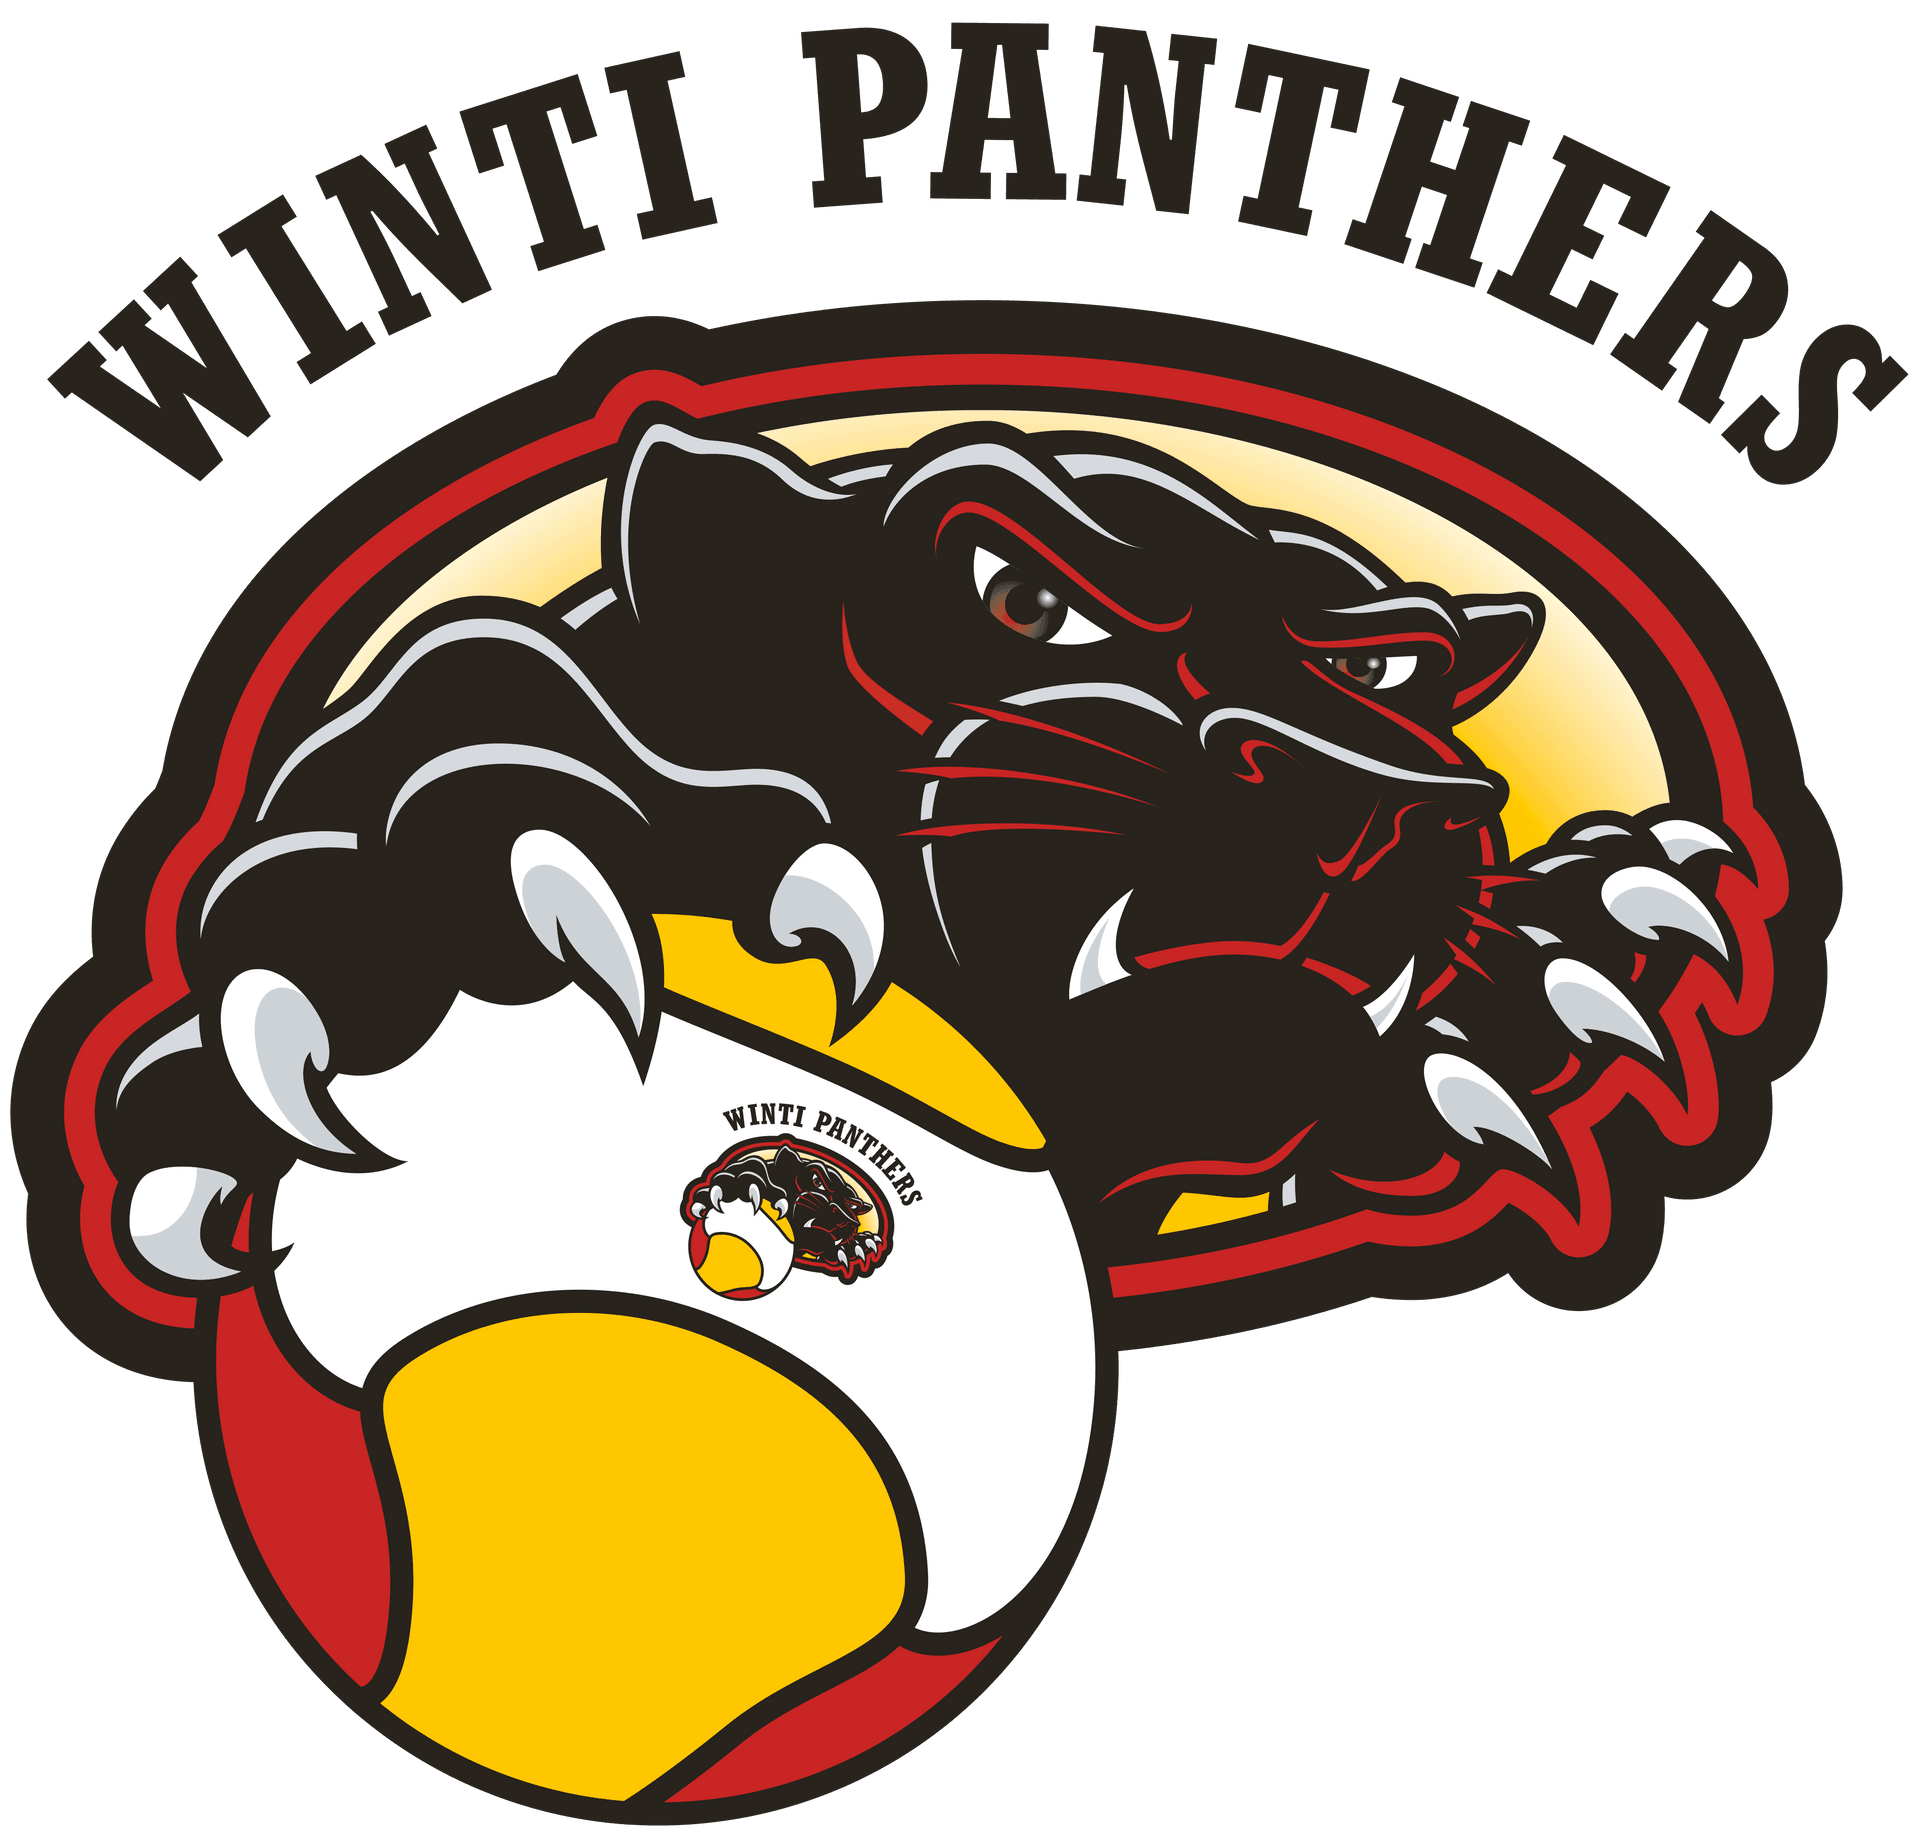 Winti Panthers 2